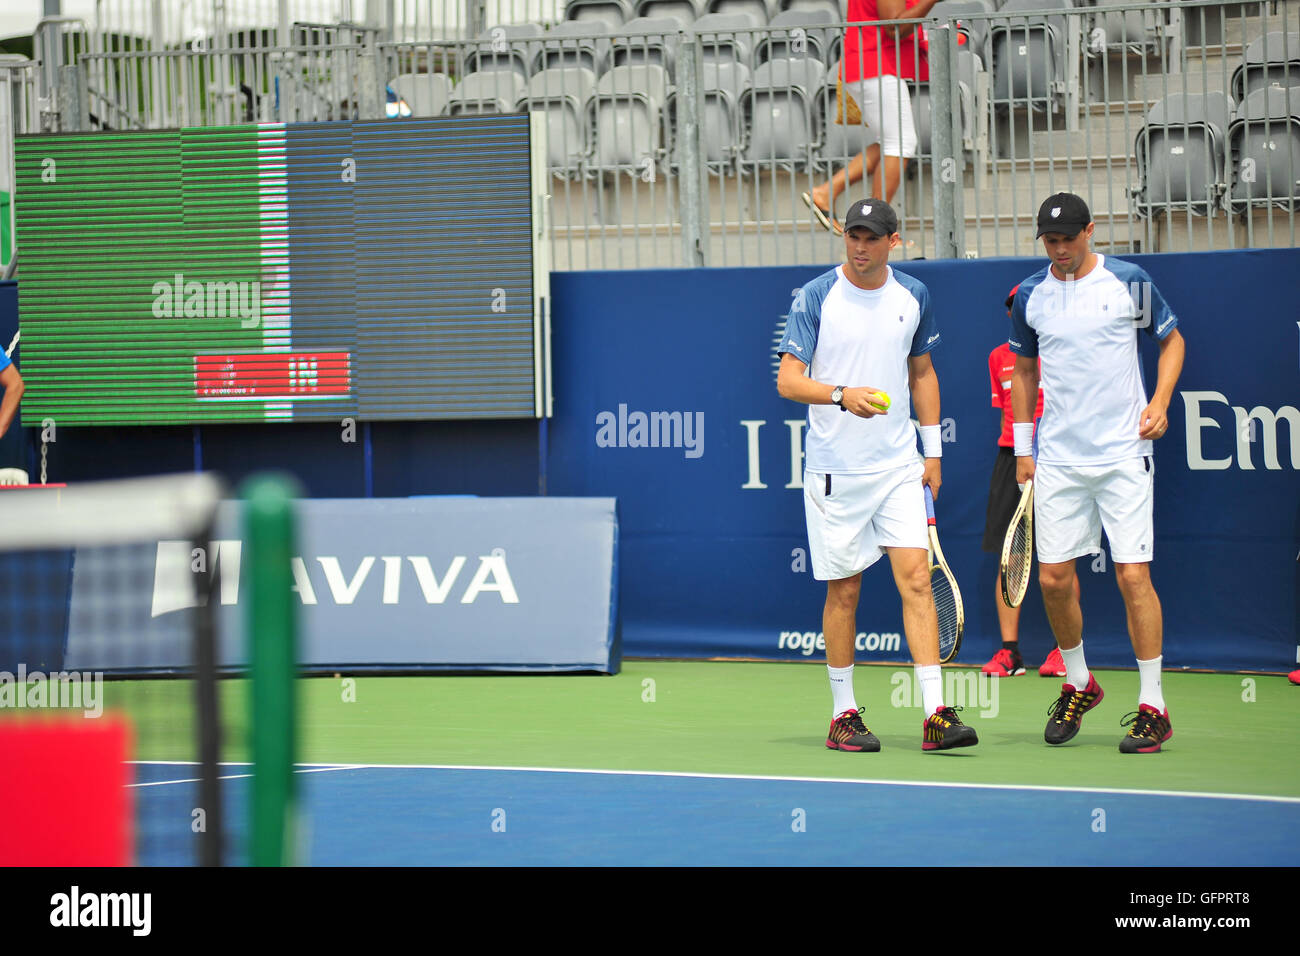 Il Bryan fratelli raddoppia i giocatori sulla corte al 2016 Rogers Cup torneo di tennis a Toronto. Foto Stock